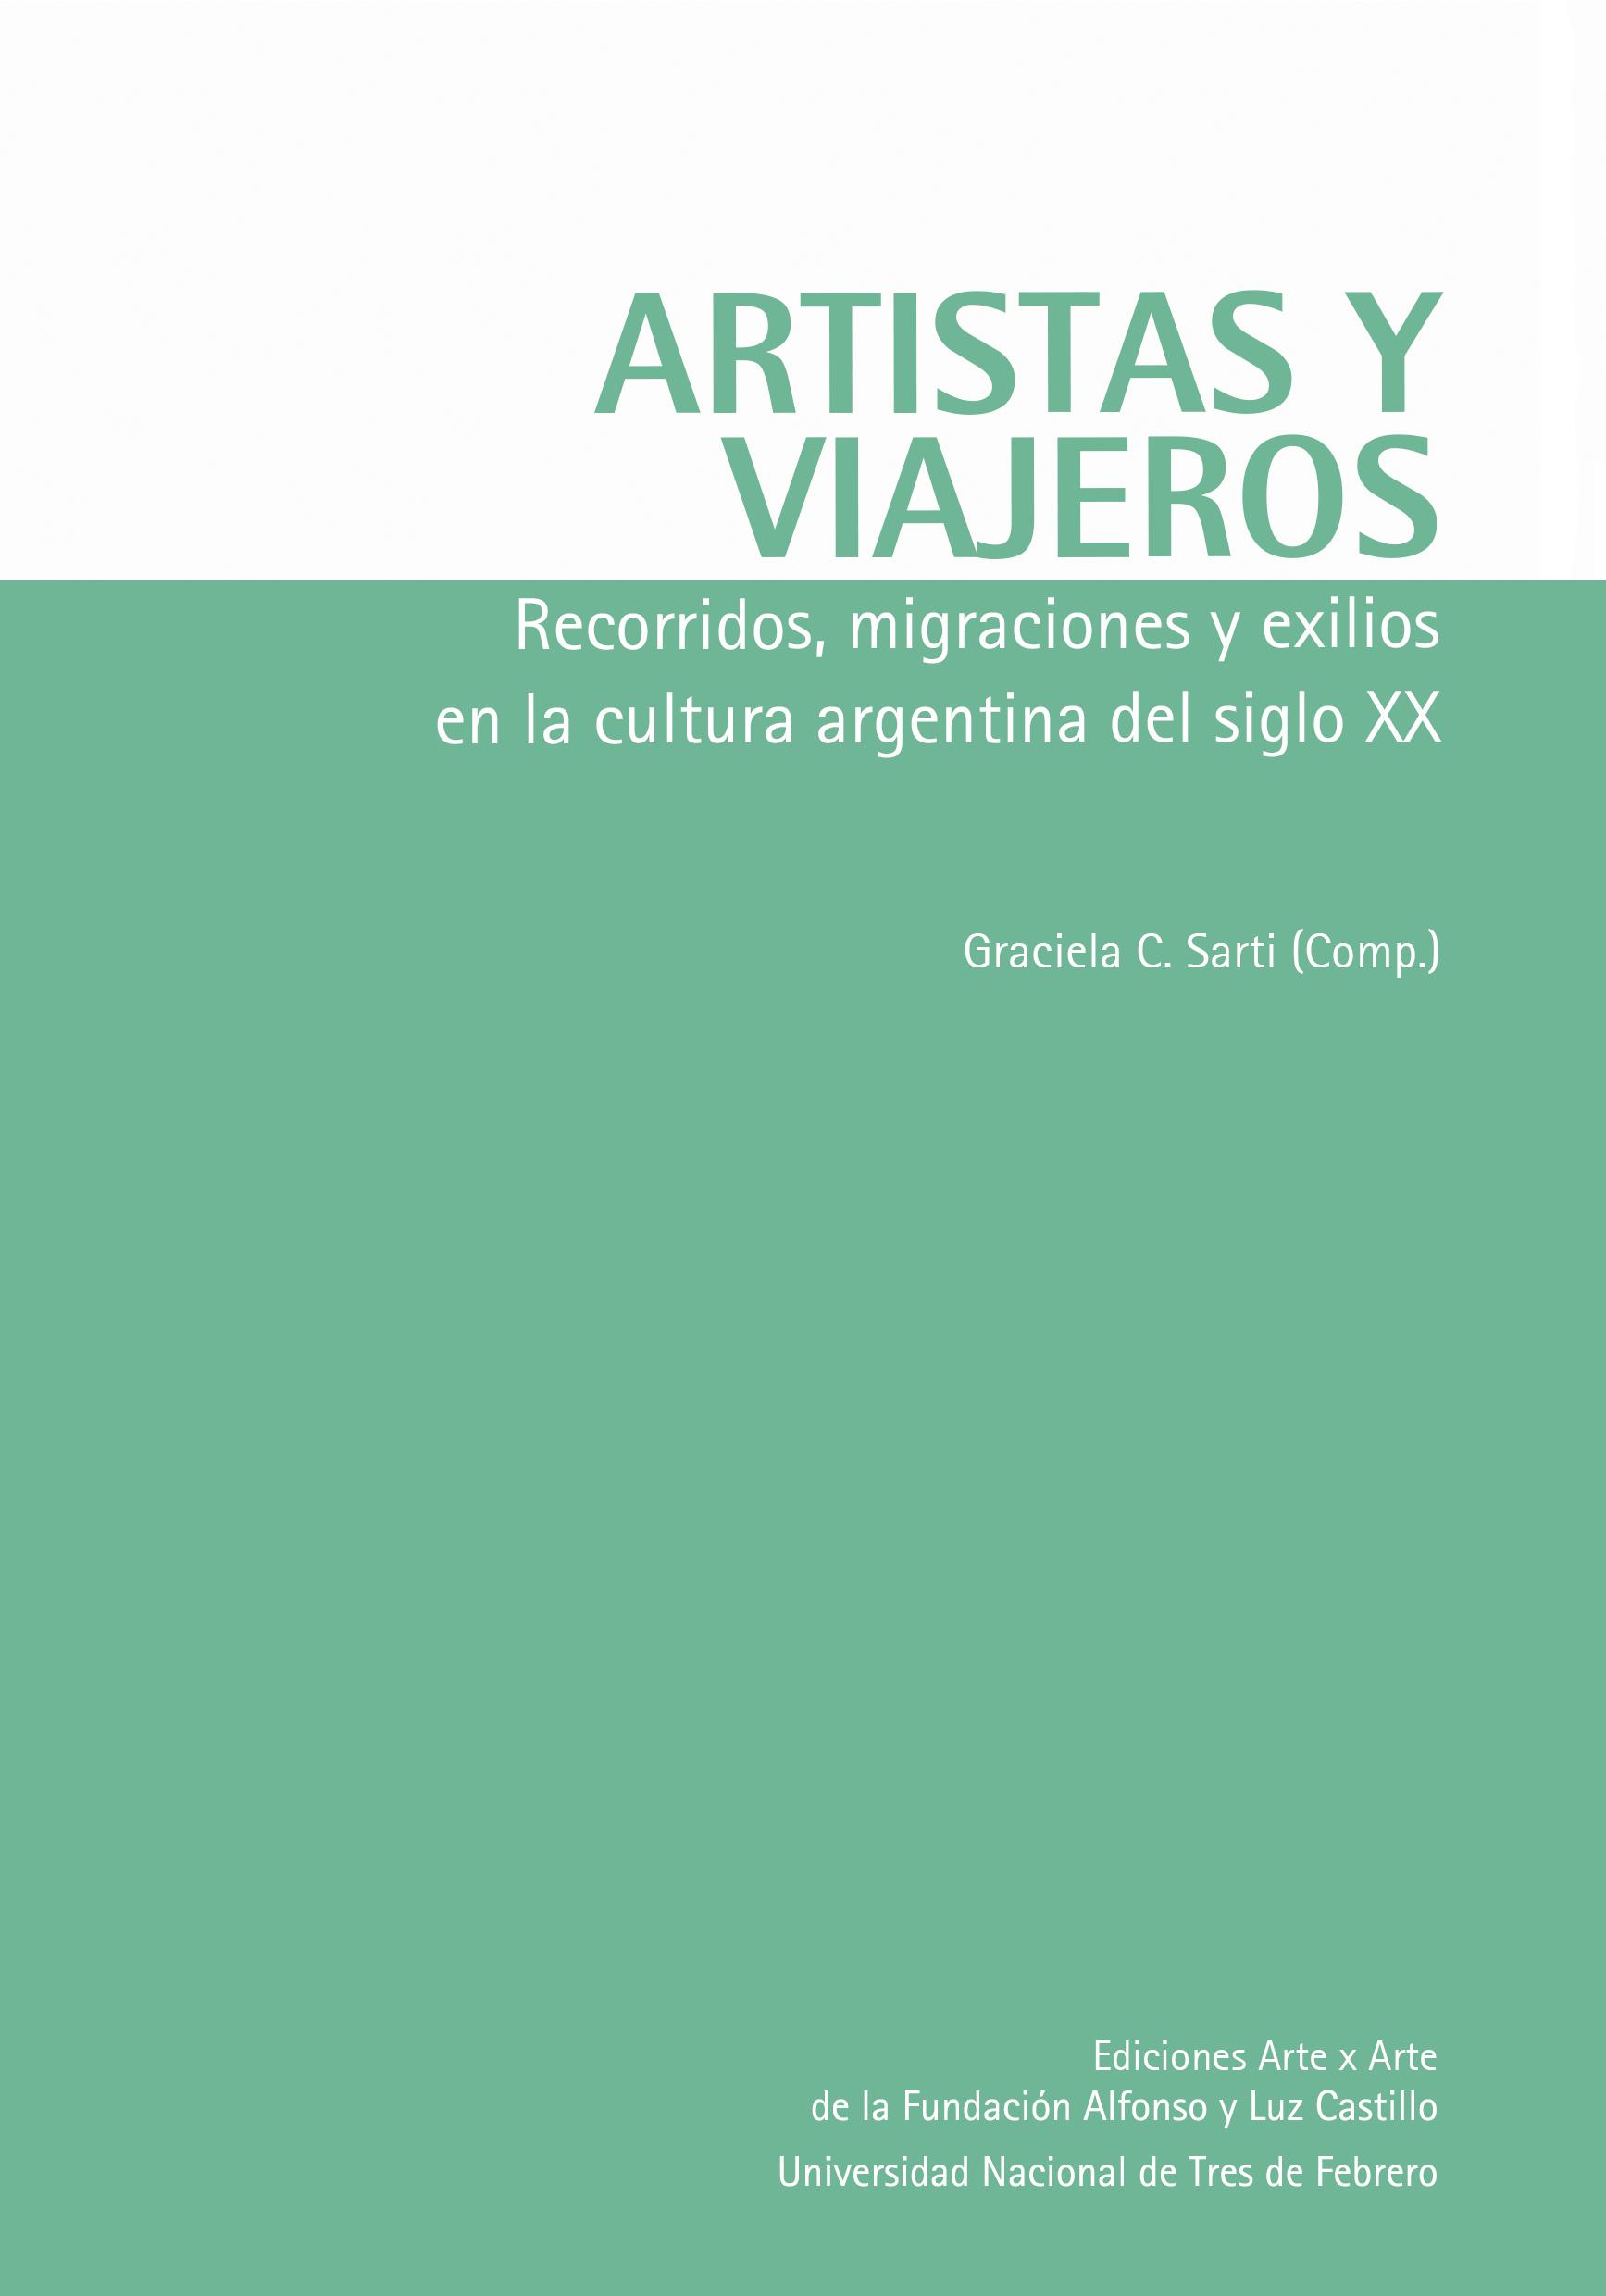 Artistas y viajeros. Recorridos, migraciones y exilios en la cultura argentina del siglo XX.